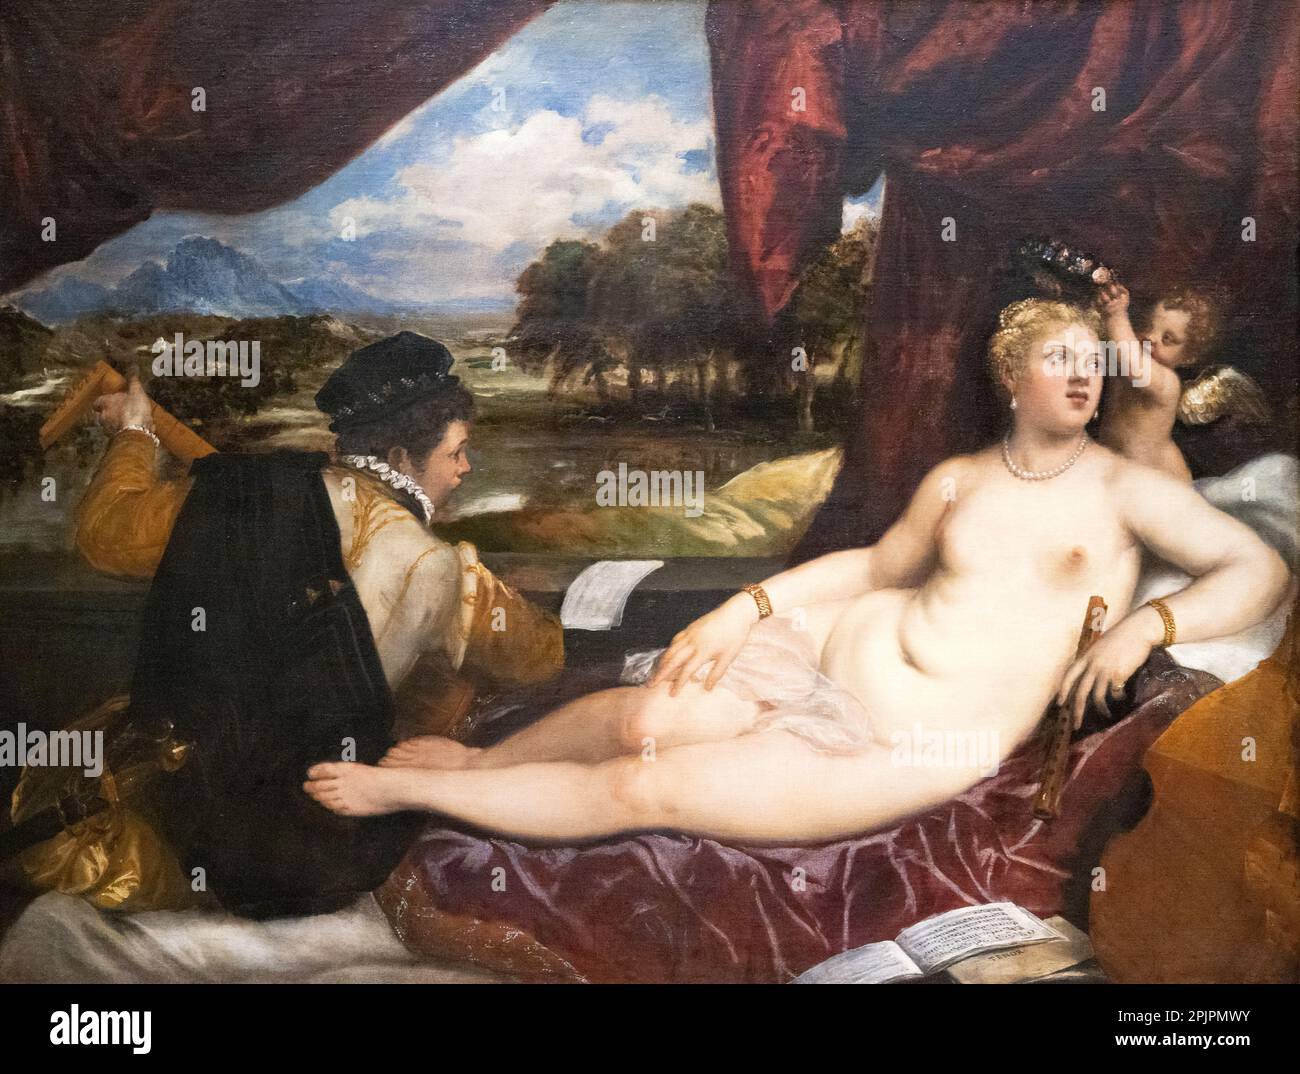 Tizianisches Gemälde, italienische Renaissance-Kunst, Venus gekrönt von Amor mit einem Lute-Spieler, 1555-65, venezianischer Künstler aus dem 16. Jahrhundert, Italien. Stockfoto